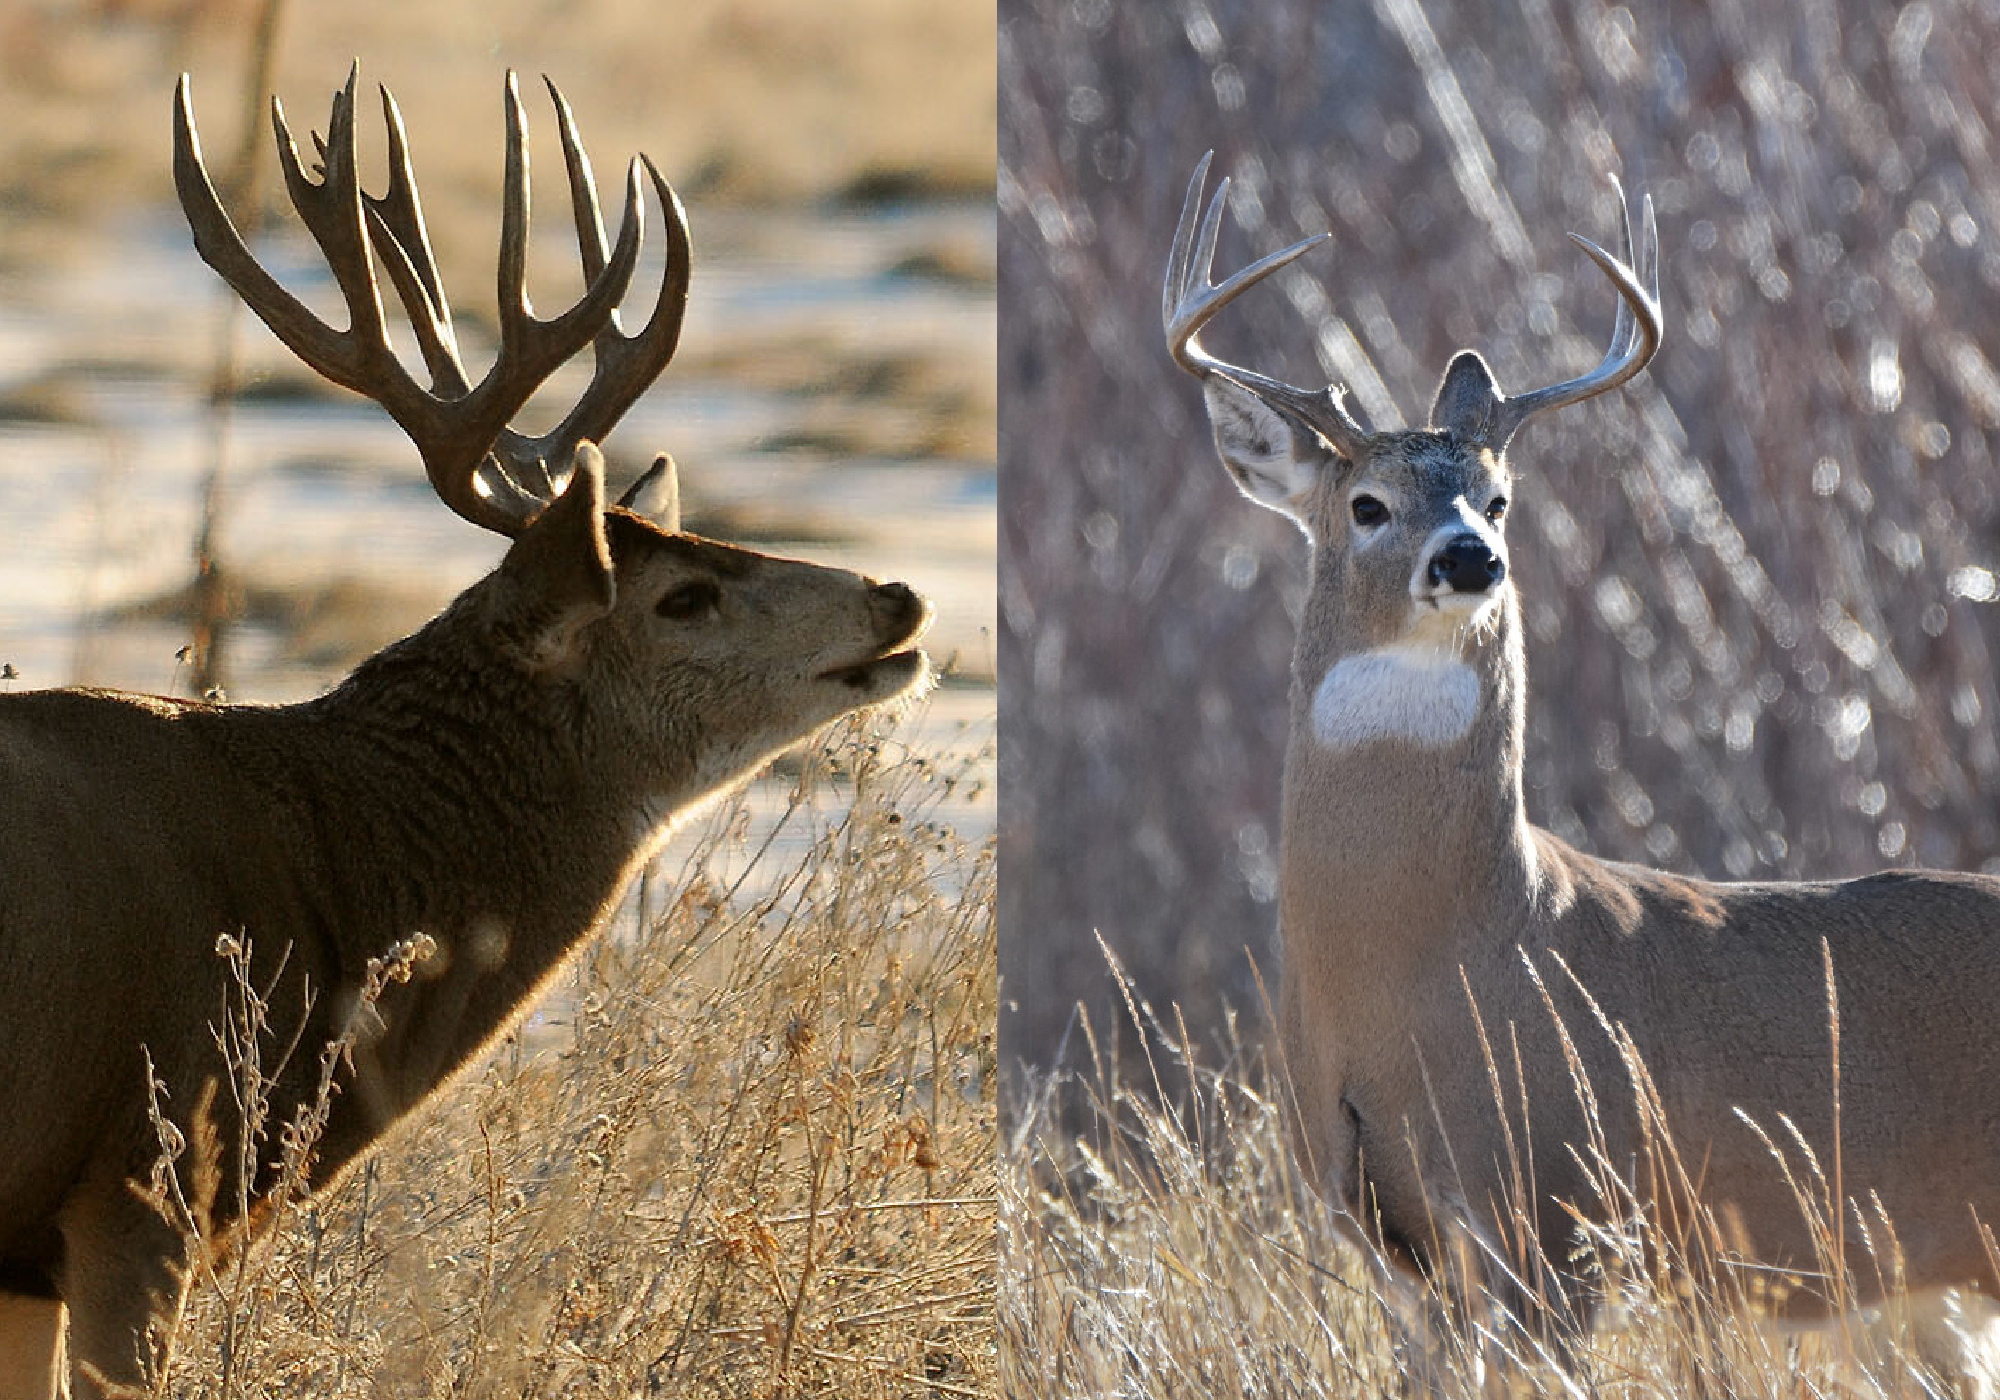 Mule deer antlers versus whitetail deer antlers.